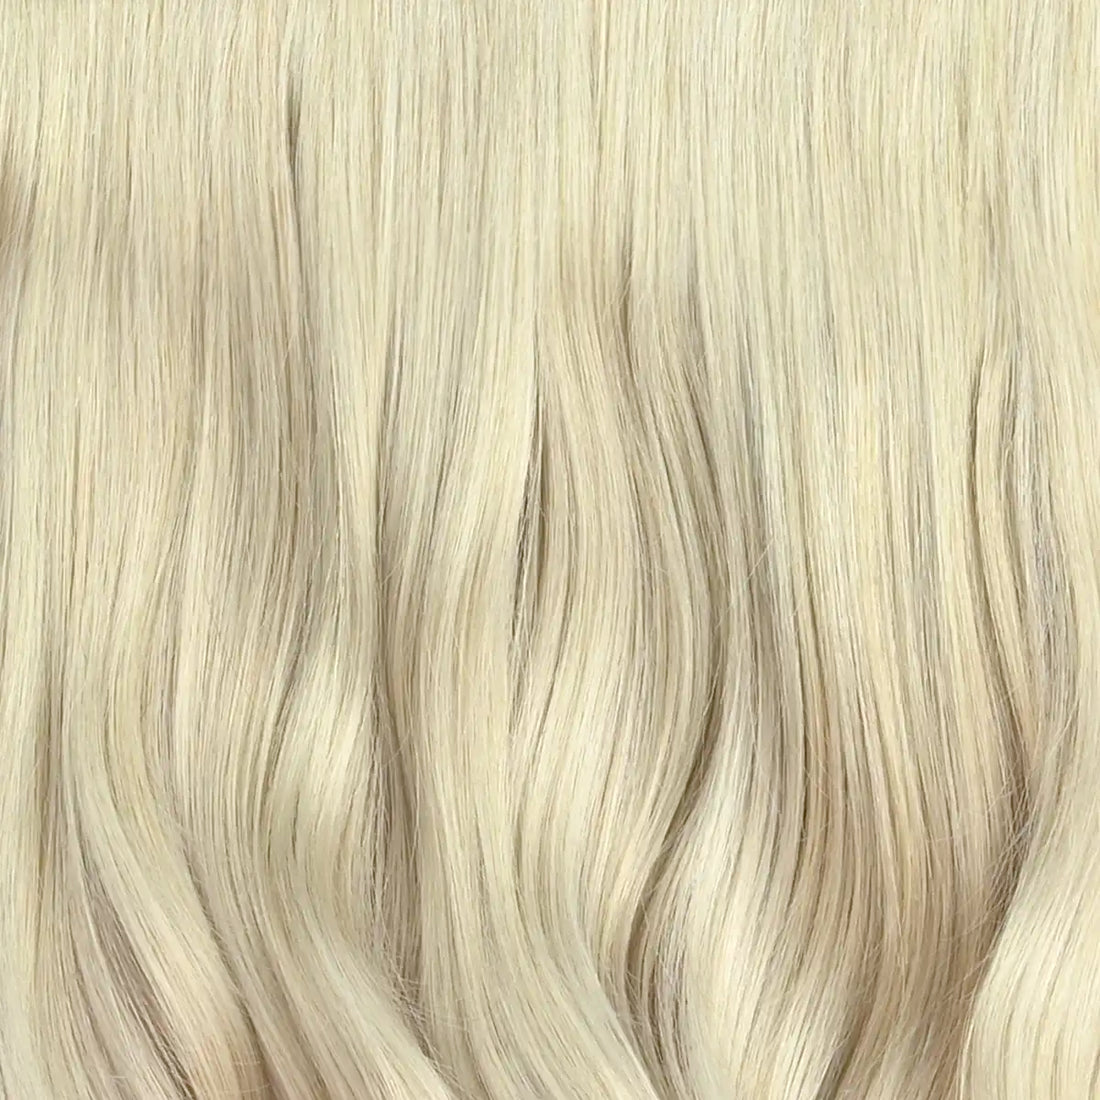 Kleurstaal Zilver as blonde 1 baans clip in hair extensions van echt haar. As blond remy human hairextensions in een ice cold, koele kleur